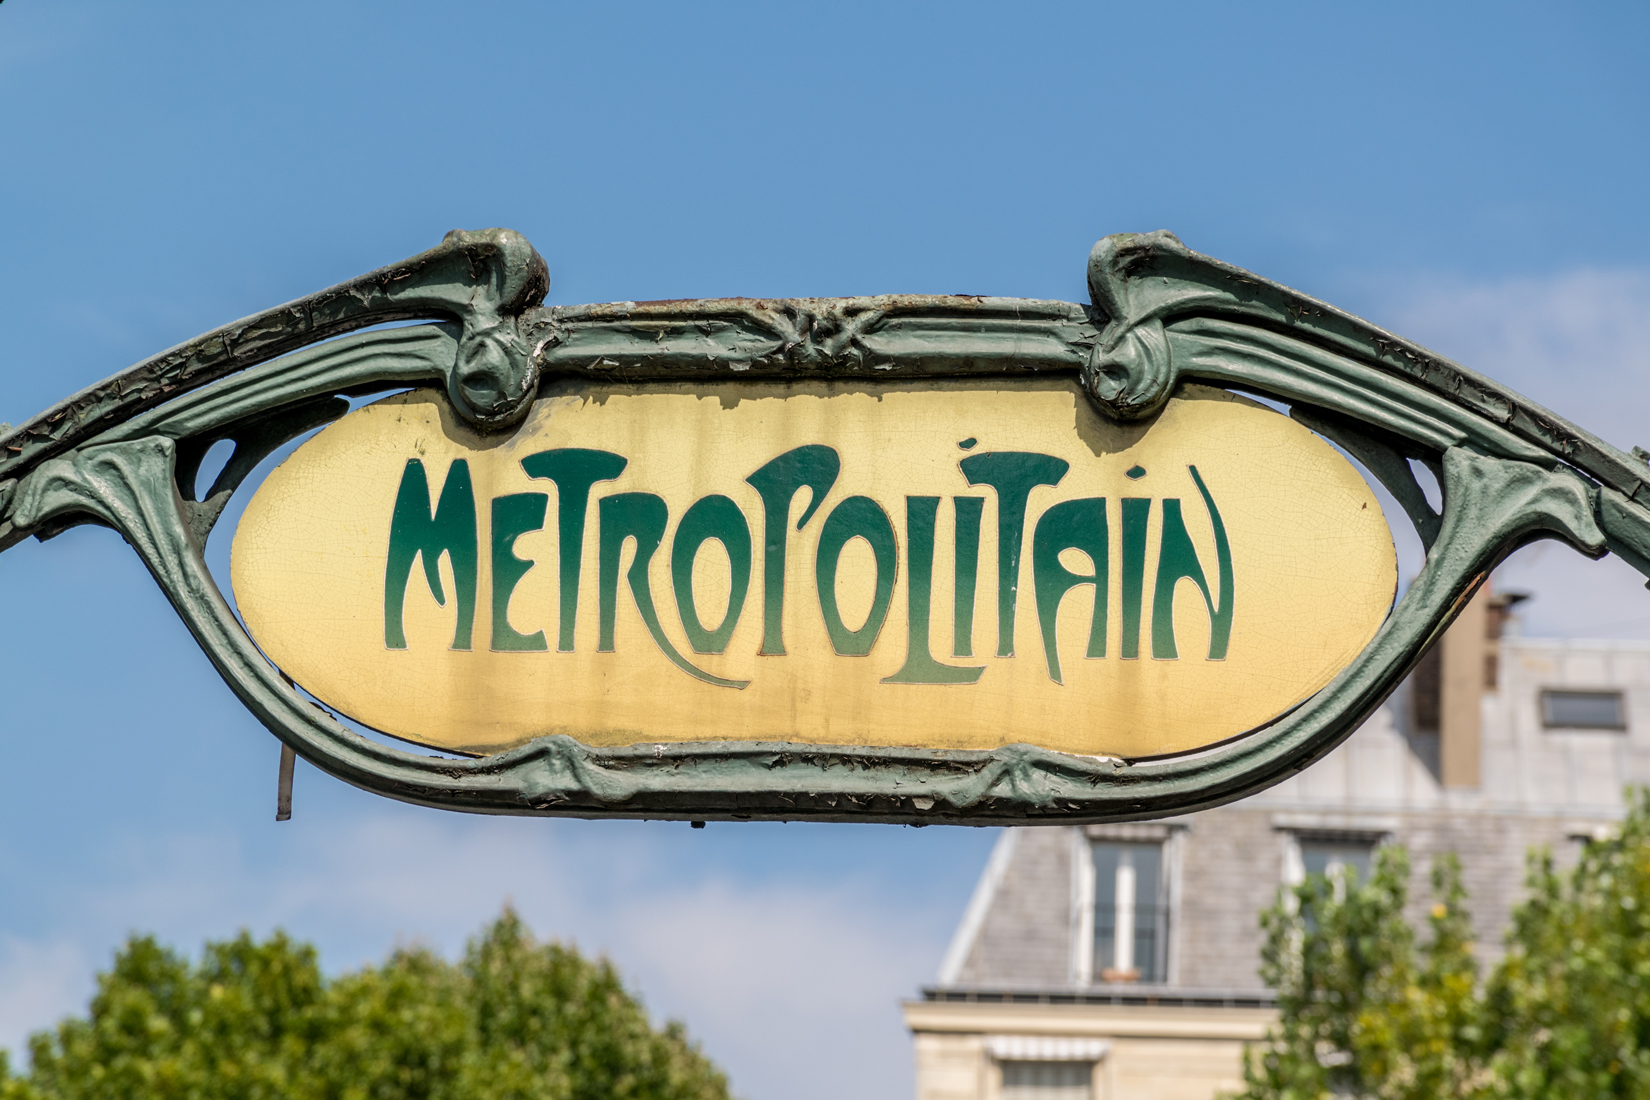 A symbol of the city, the Paris Métro was influenced by Art Nouveau